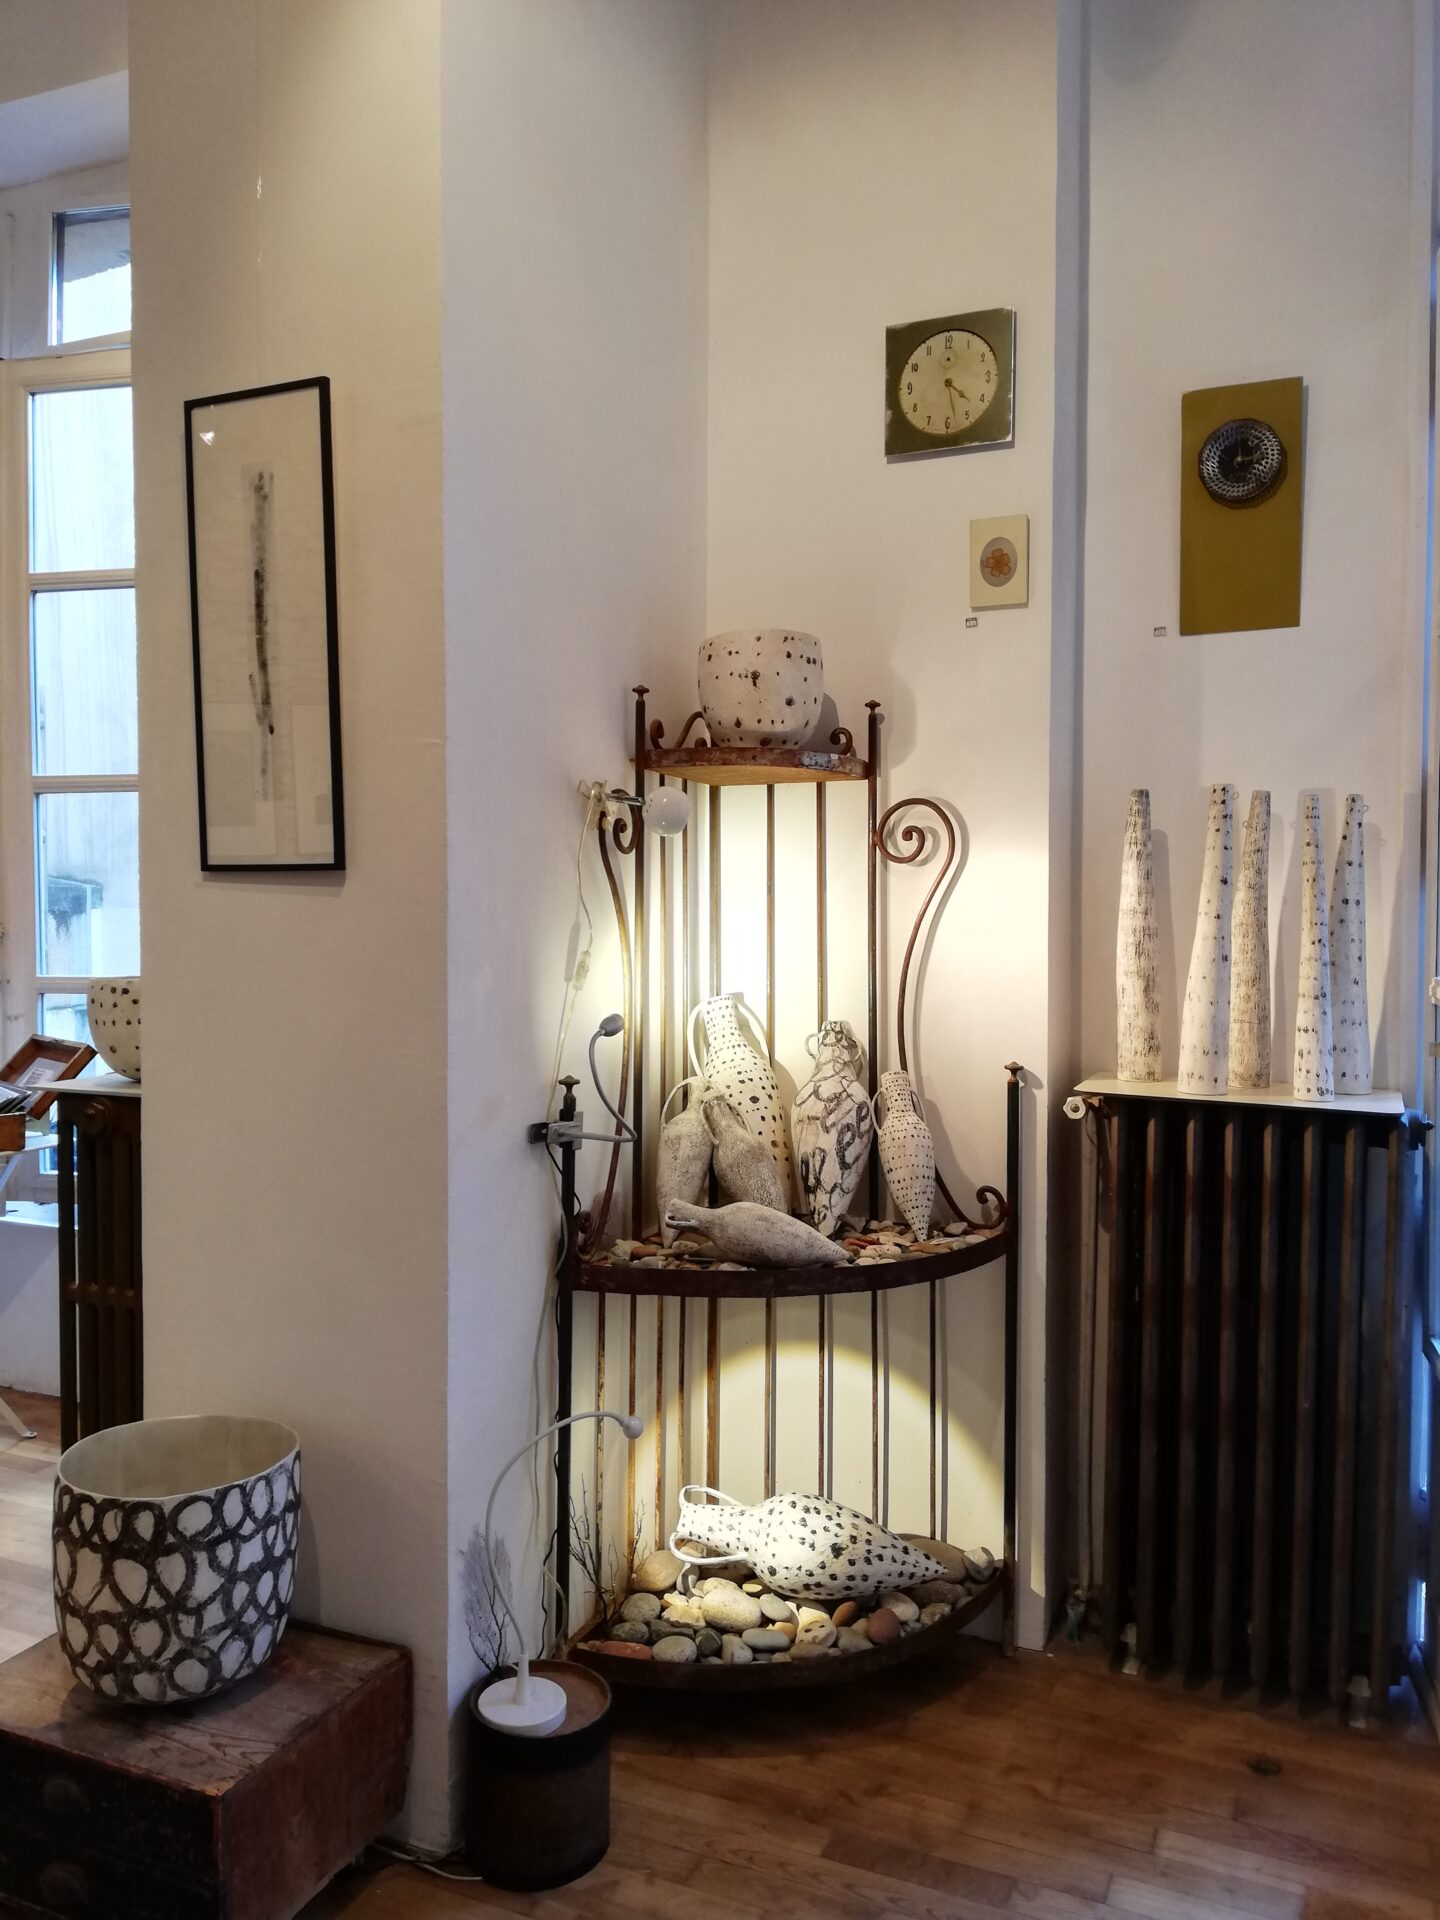 2020 - Atelier-galerie l'Antre temps, avec Pauleen K et Océane Madelaine, Rennes